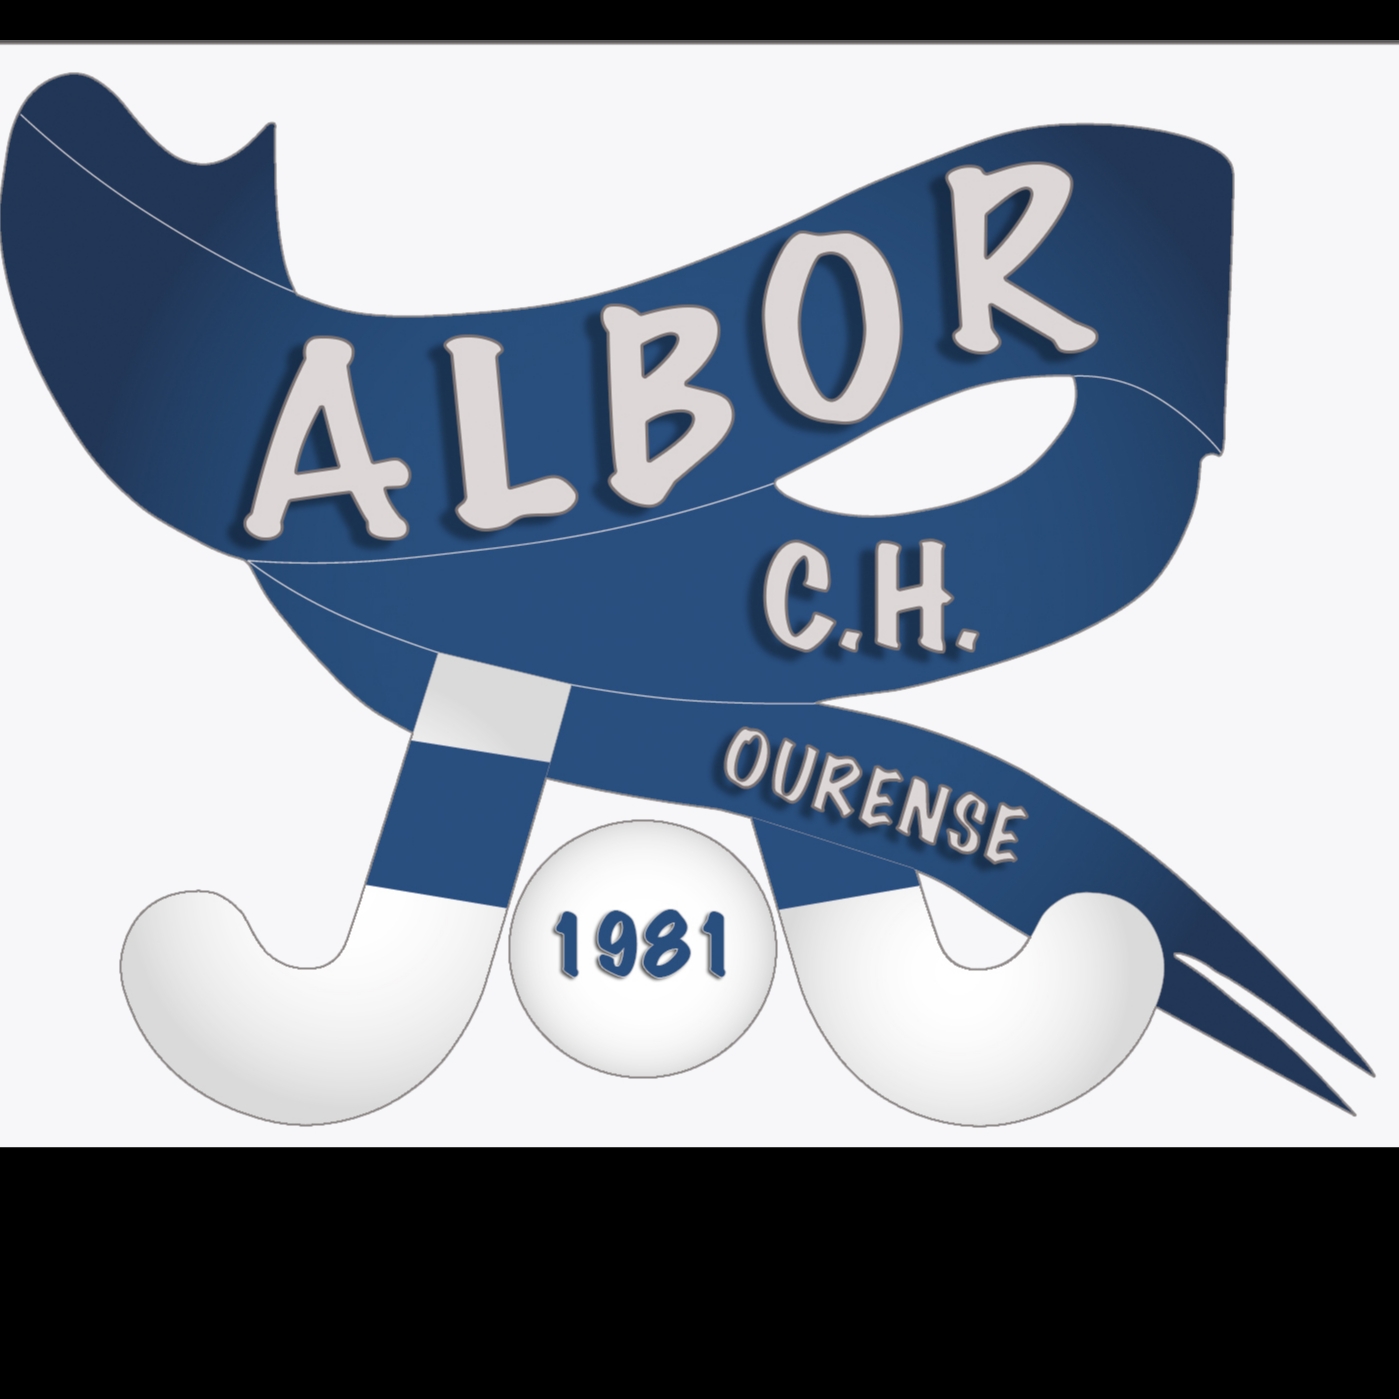 CLUB HOCKEY ALBOR